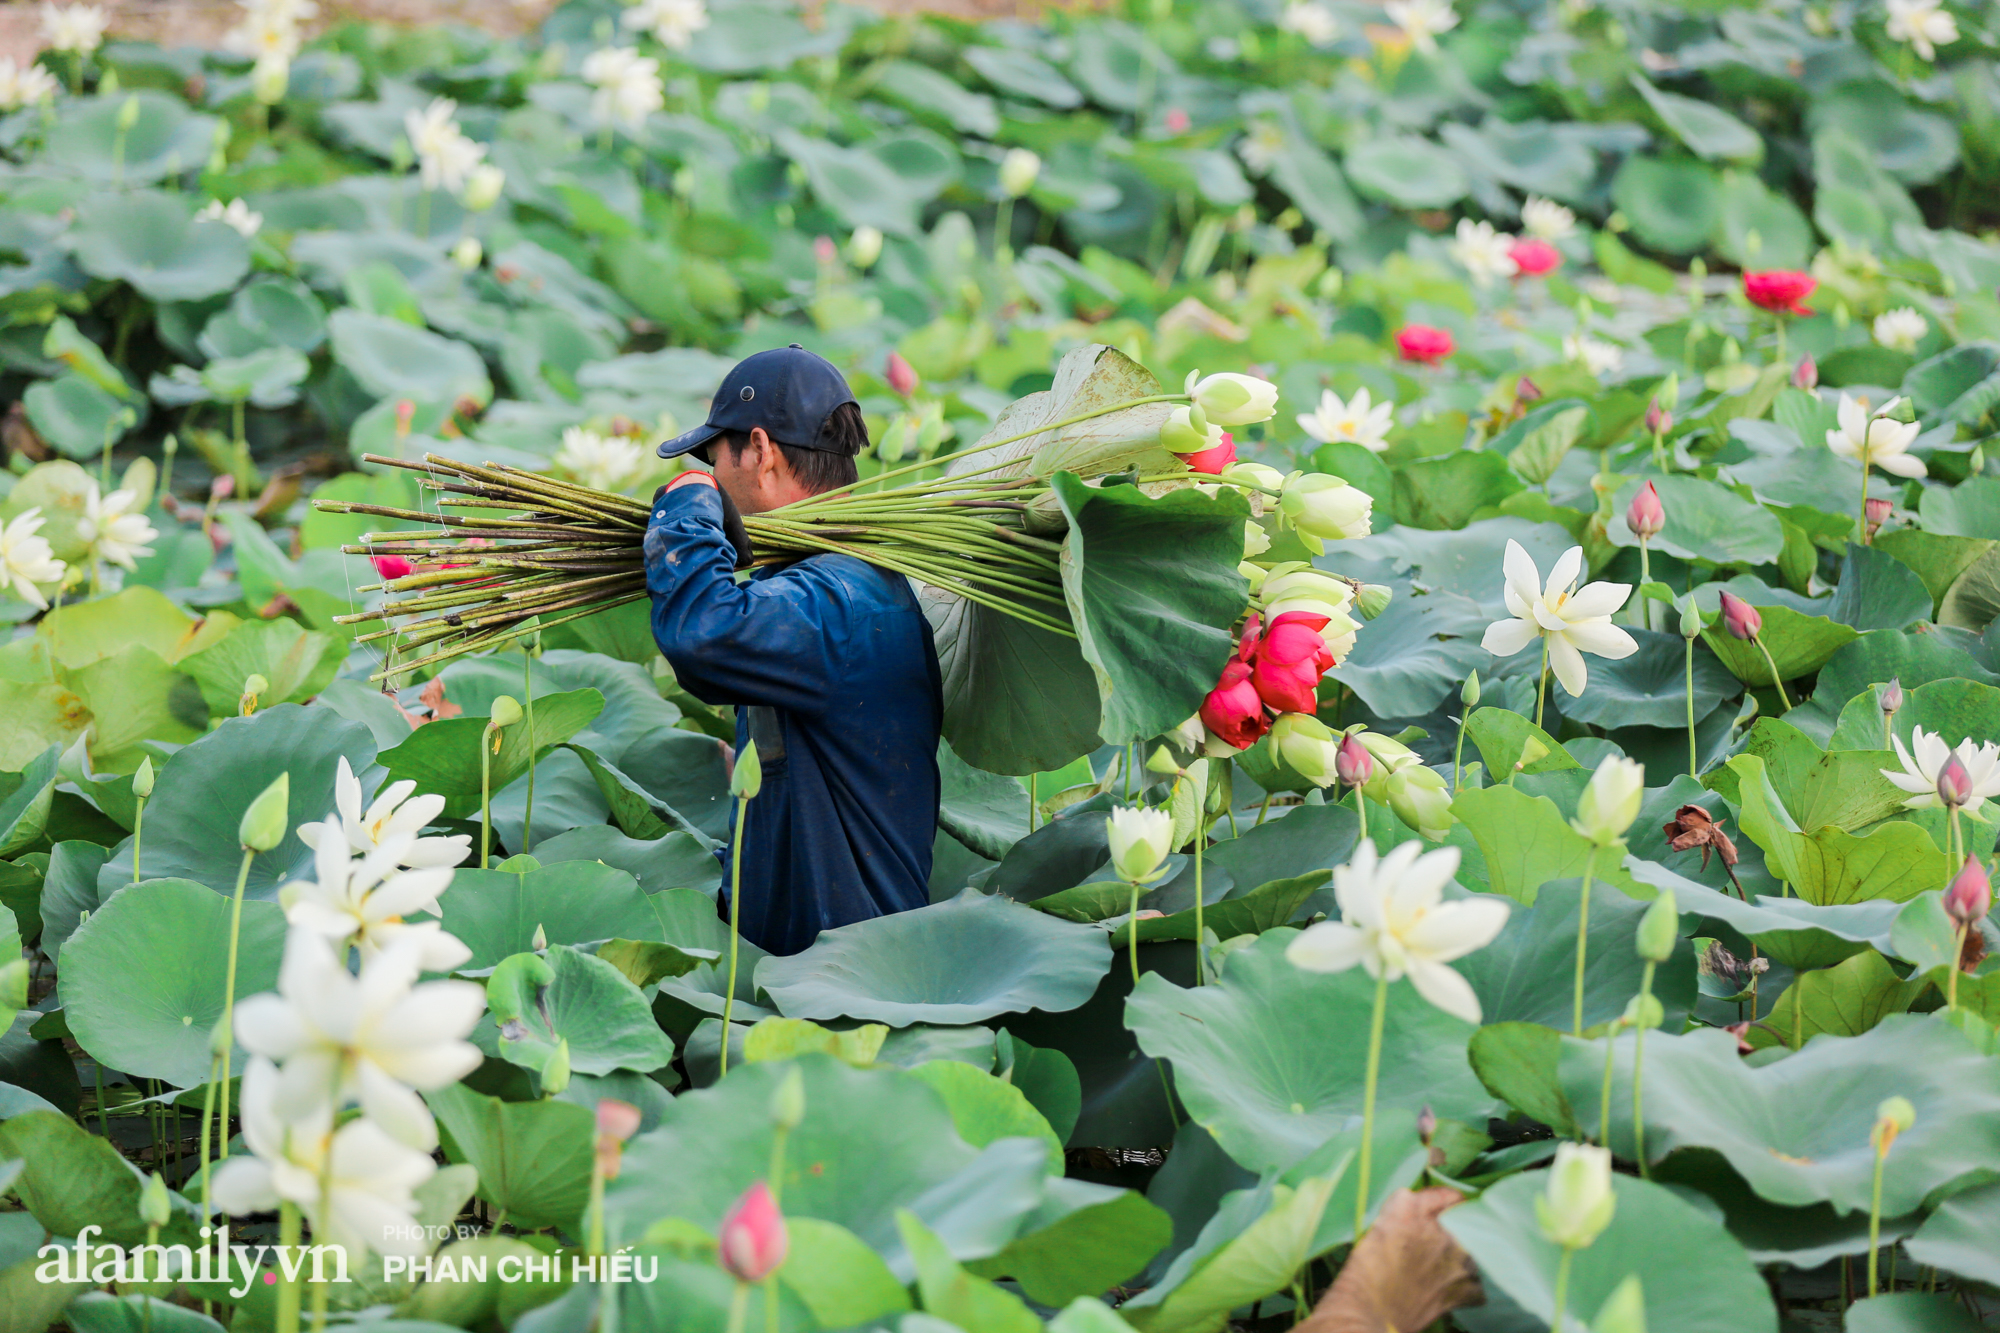 Ngợp với đầm sen nhiều loại nhất Việt Nam đang thi nhau đua nở, muốn hưởng trọn hương sắc phải cầu kỳ có mặt từ lúc sớm tinh mơ - Ảnh 12.